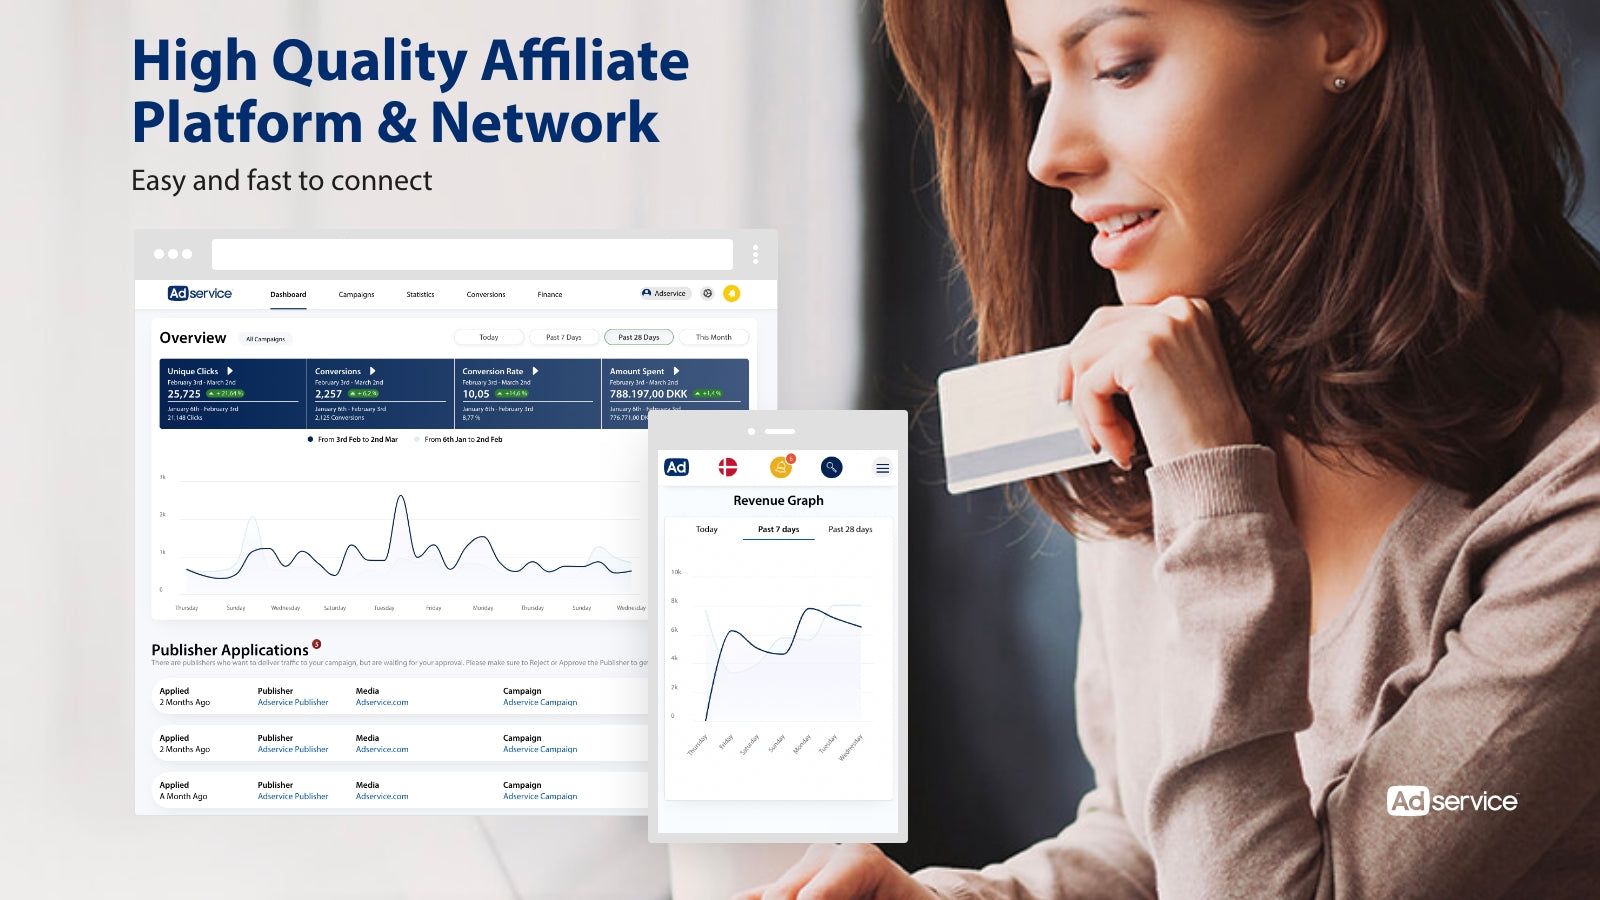 High quality affiliate platform & network